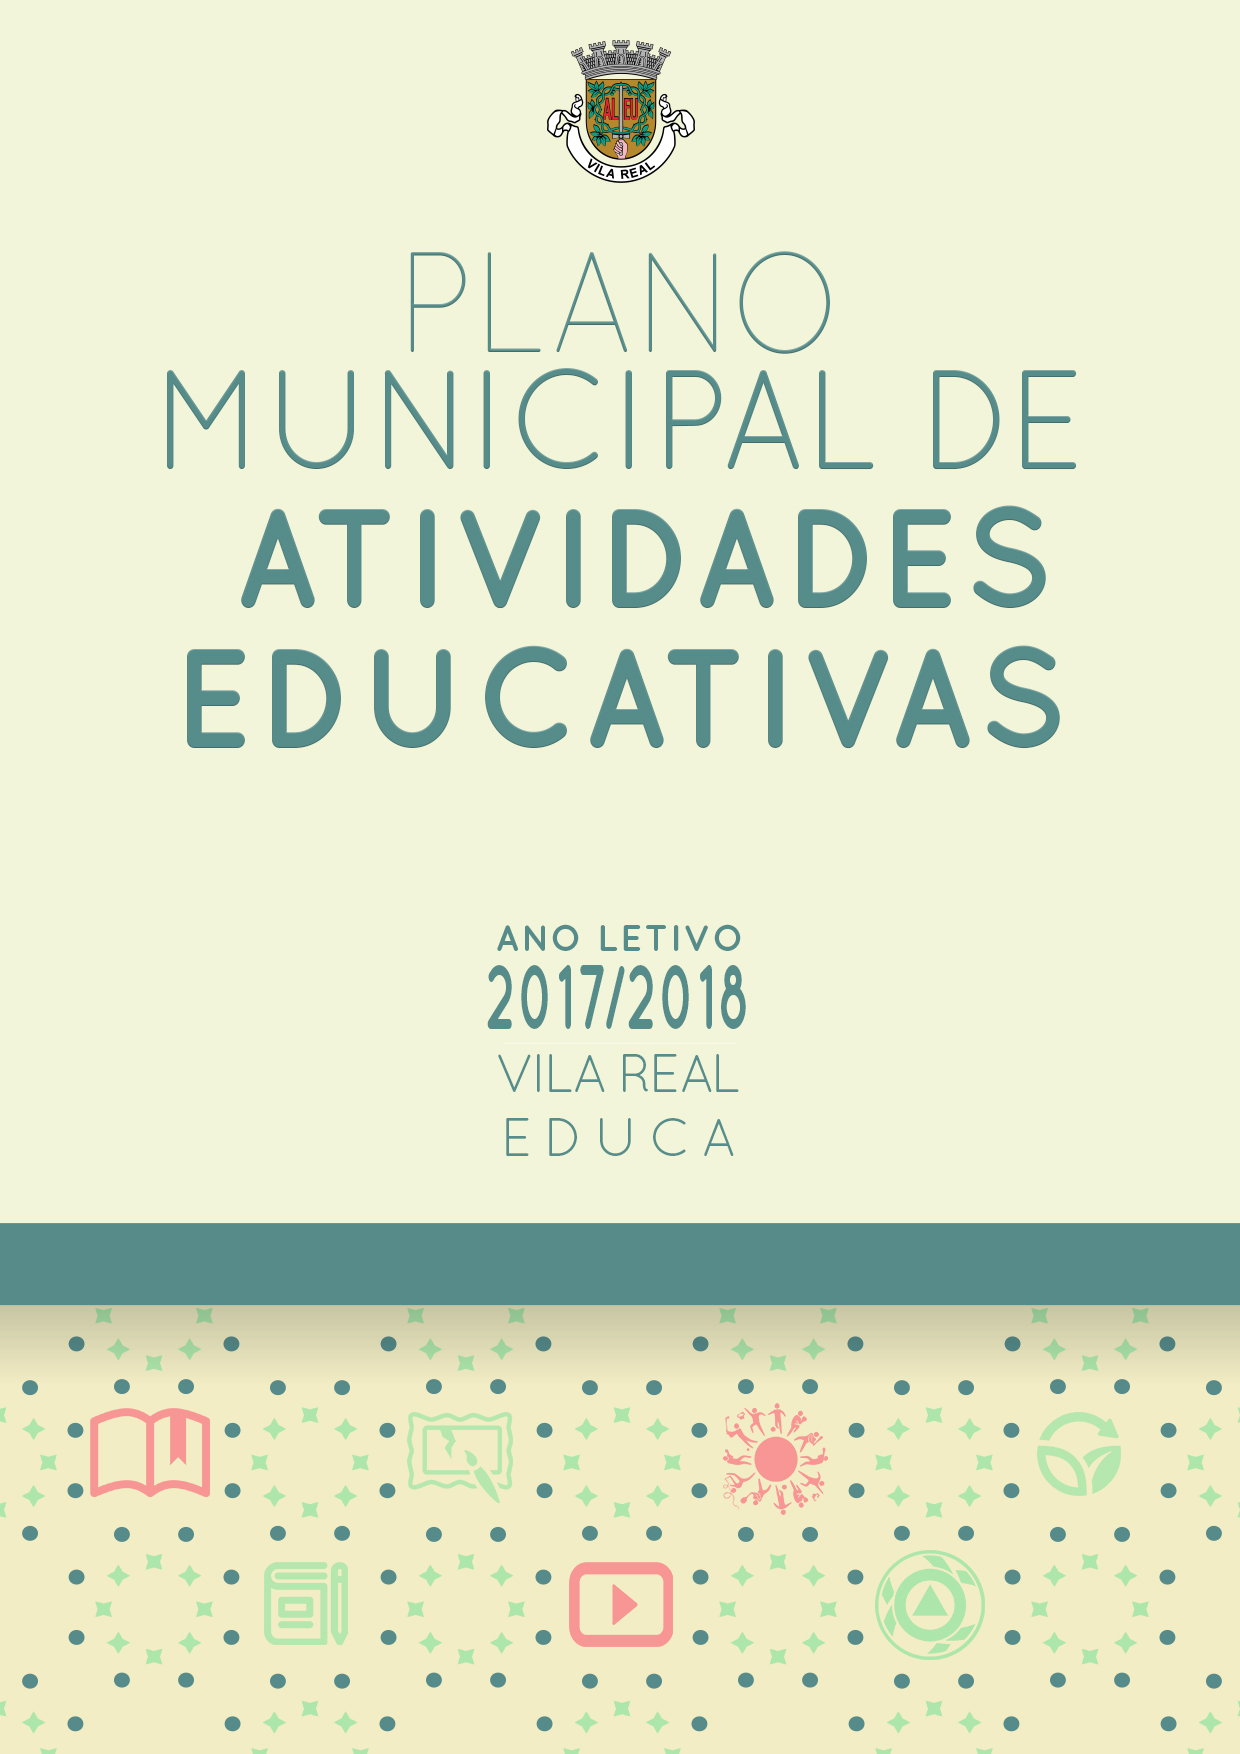 PLANO MUNICIPAL DE ATIVIDADES EDUCATIVAS PARA O ANO LETIVO 2017/18